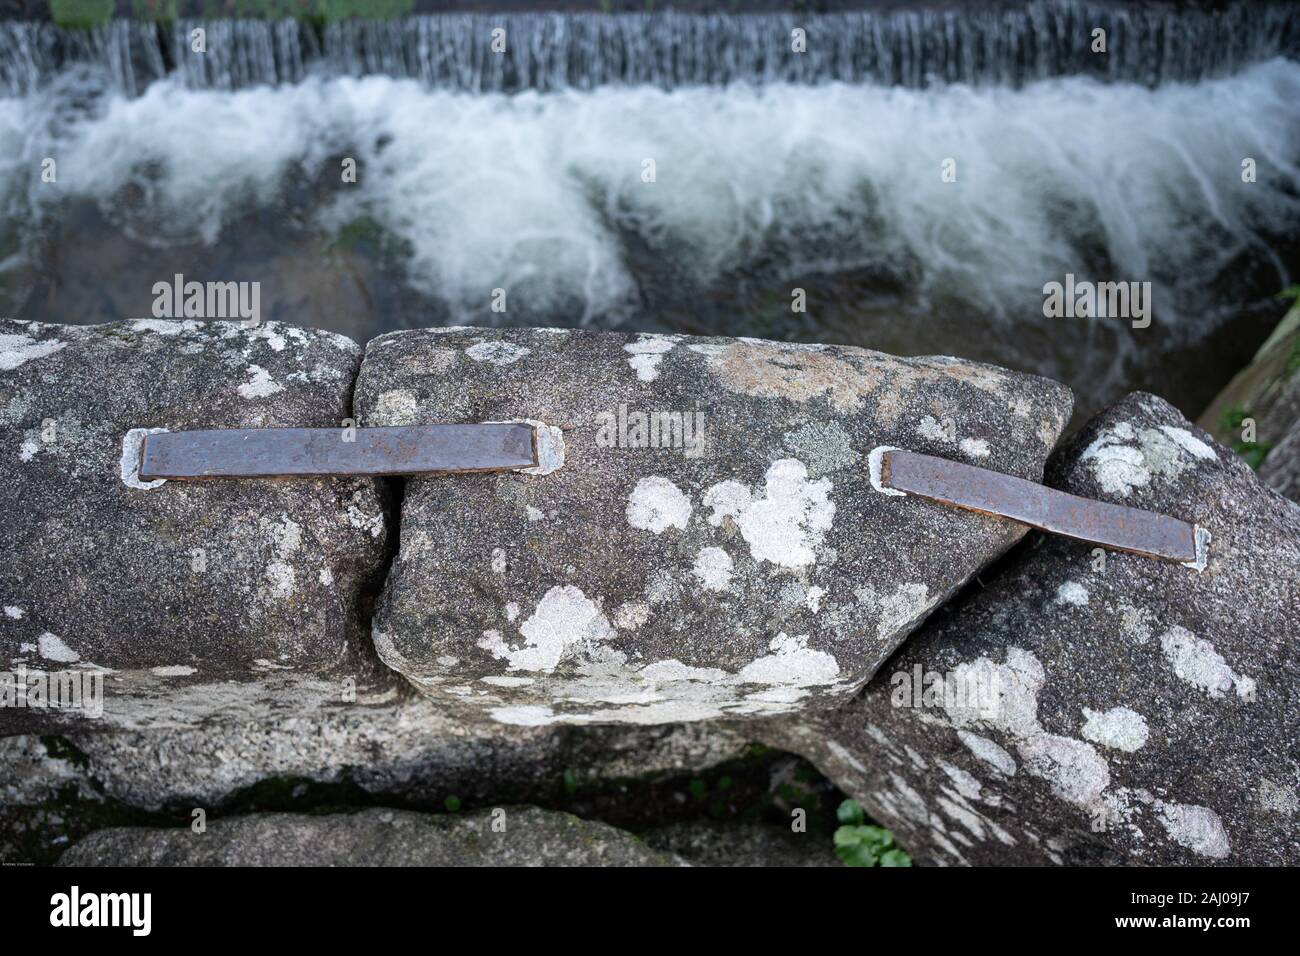 Metallklammern Holding die alte Dimension Steinblöcke einer römischen Brücke. Metallische Schelle oder Heften, die mit führen zu den Stein Material verbindet Stockfoto